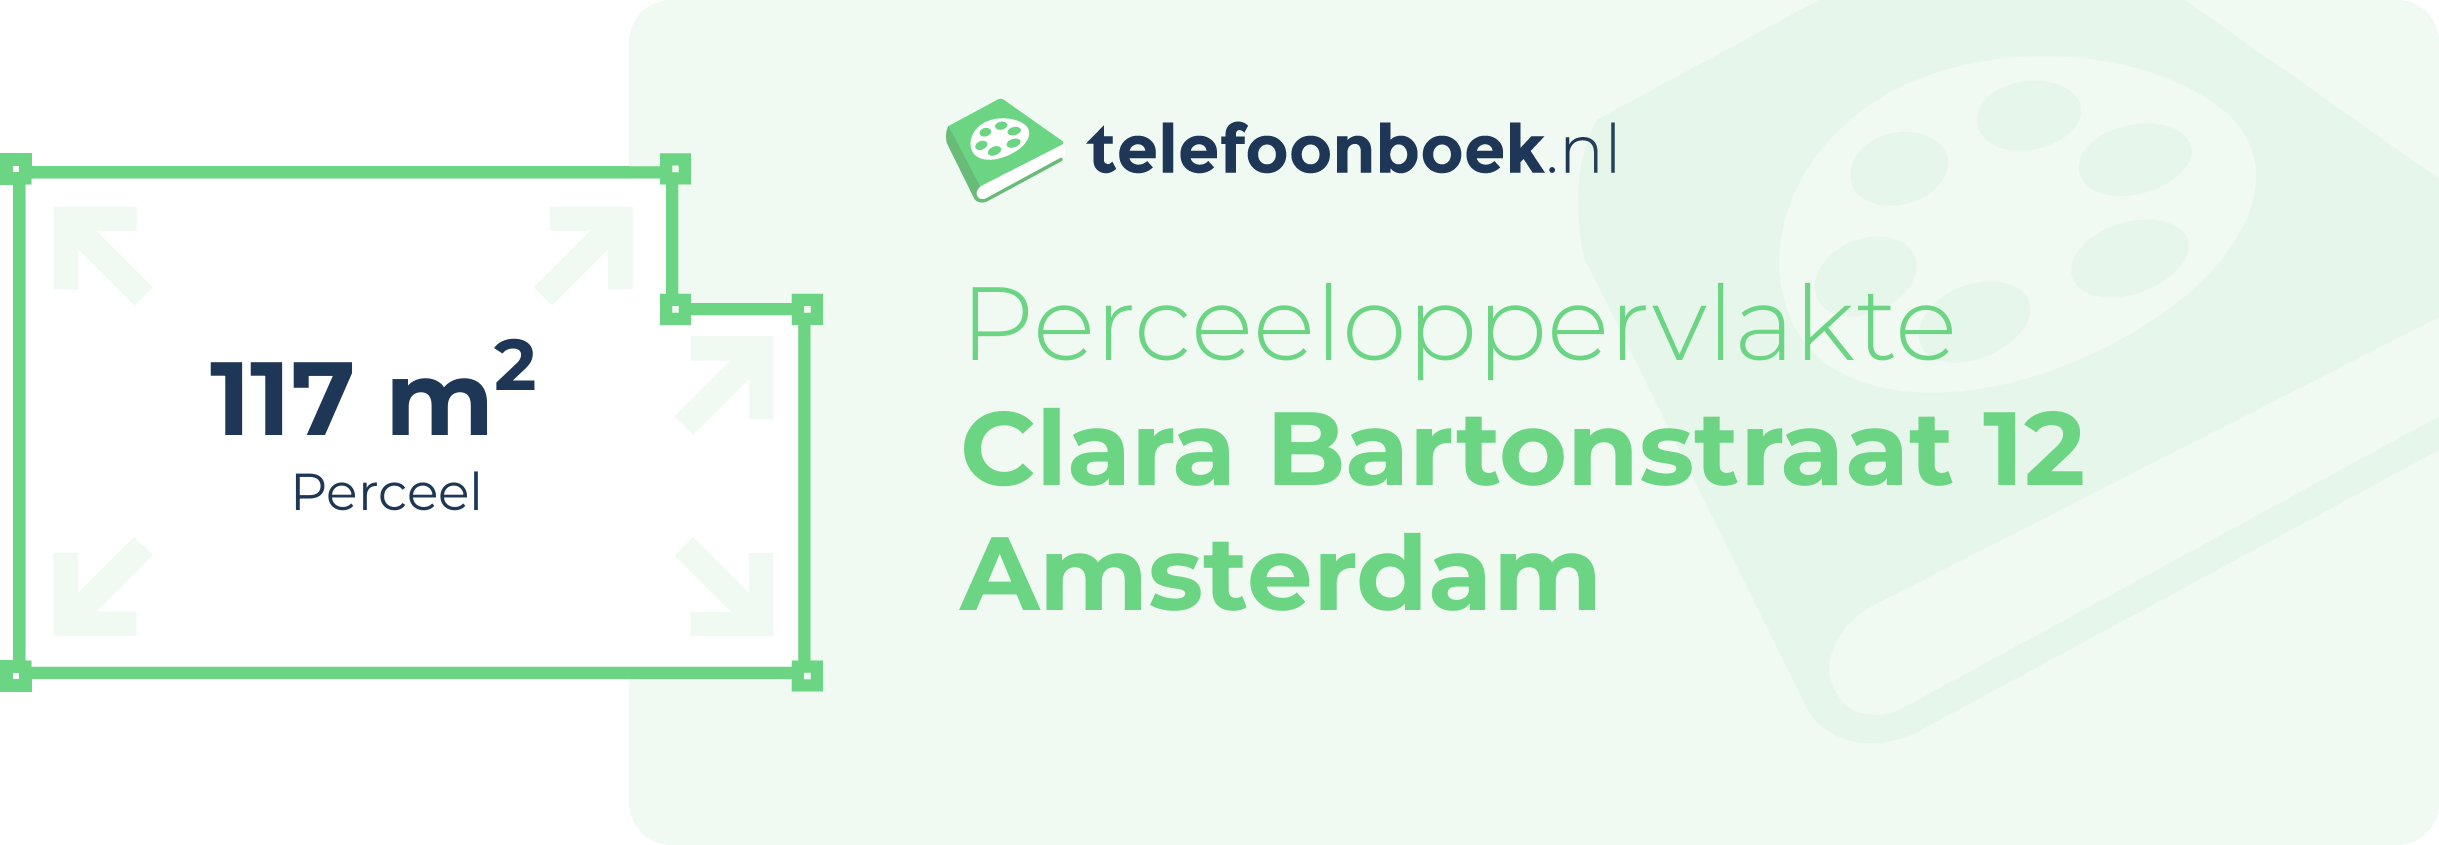 Perceeloppervlakte Clara Bartonstraat 12 Amsterdam